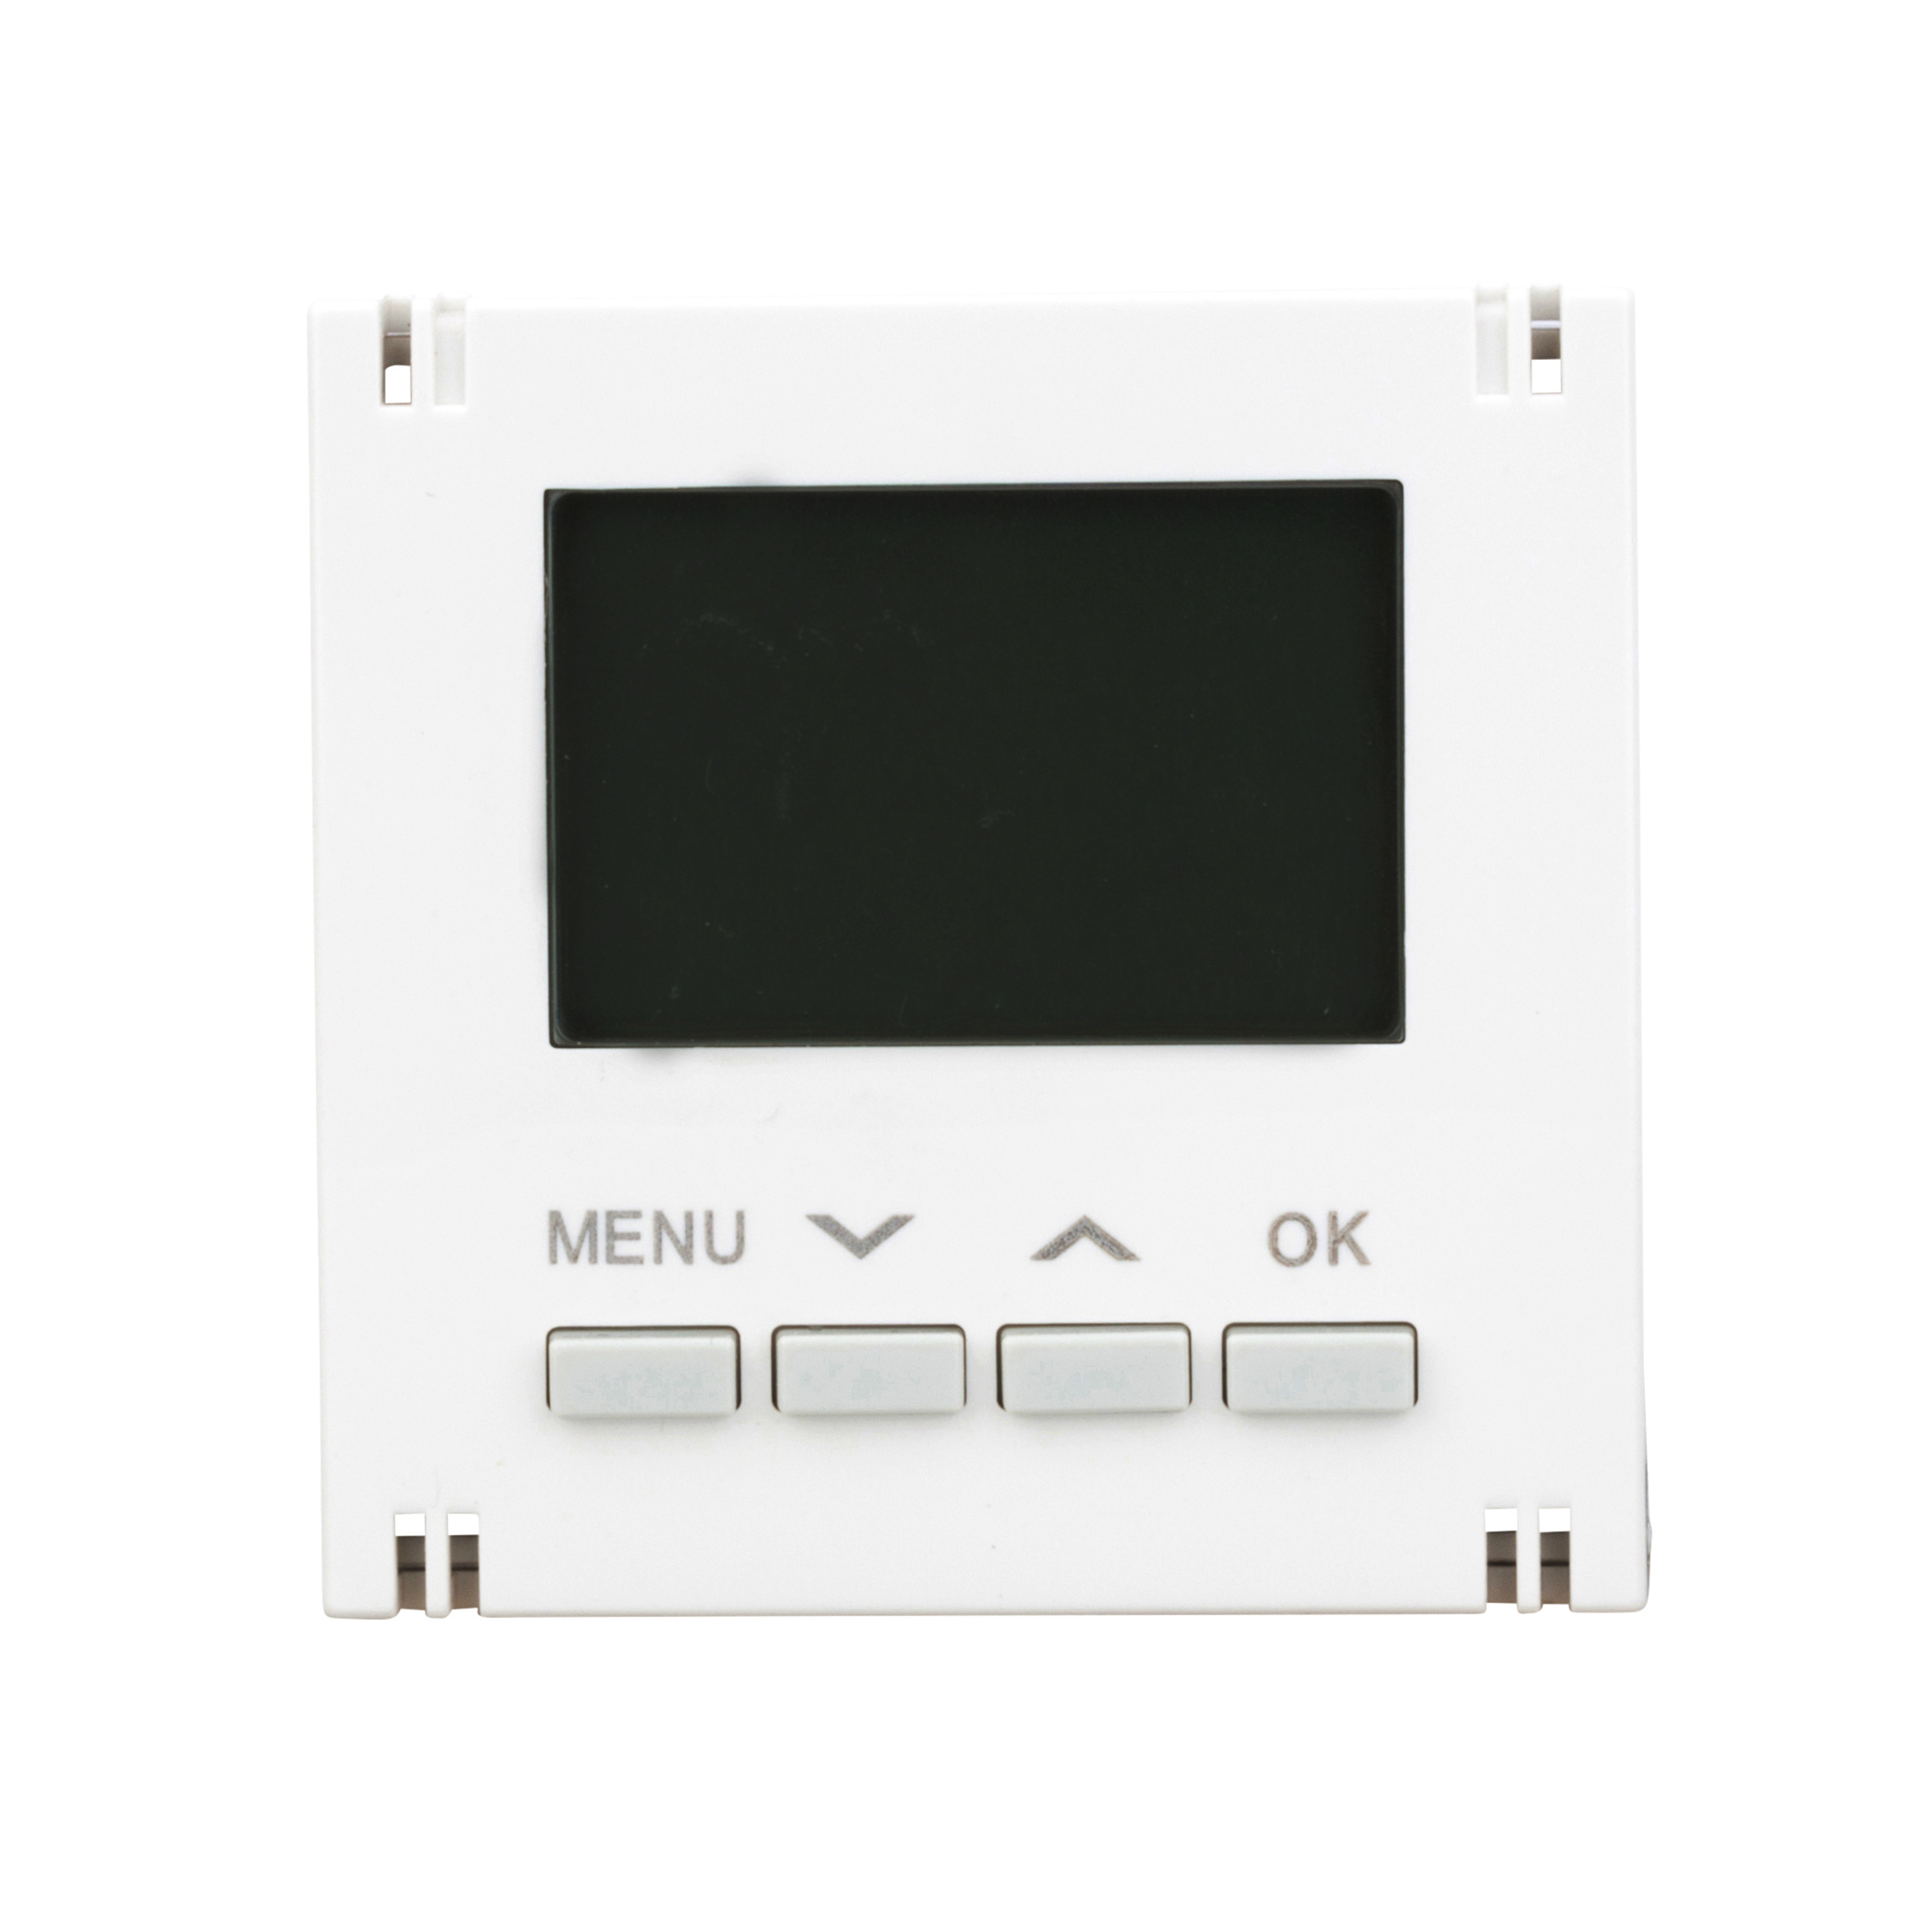 Foto: Digital Thermostat Aufsatz, Heizung/Kühlung, weiß (c) Schrack